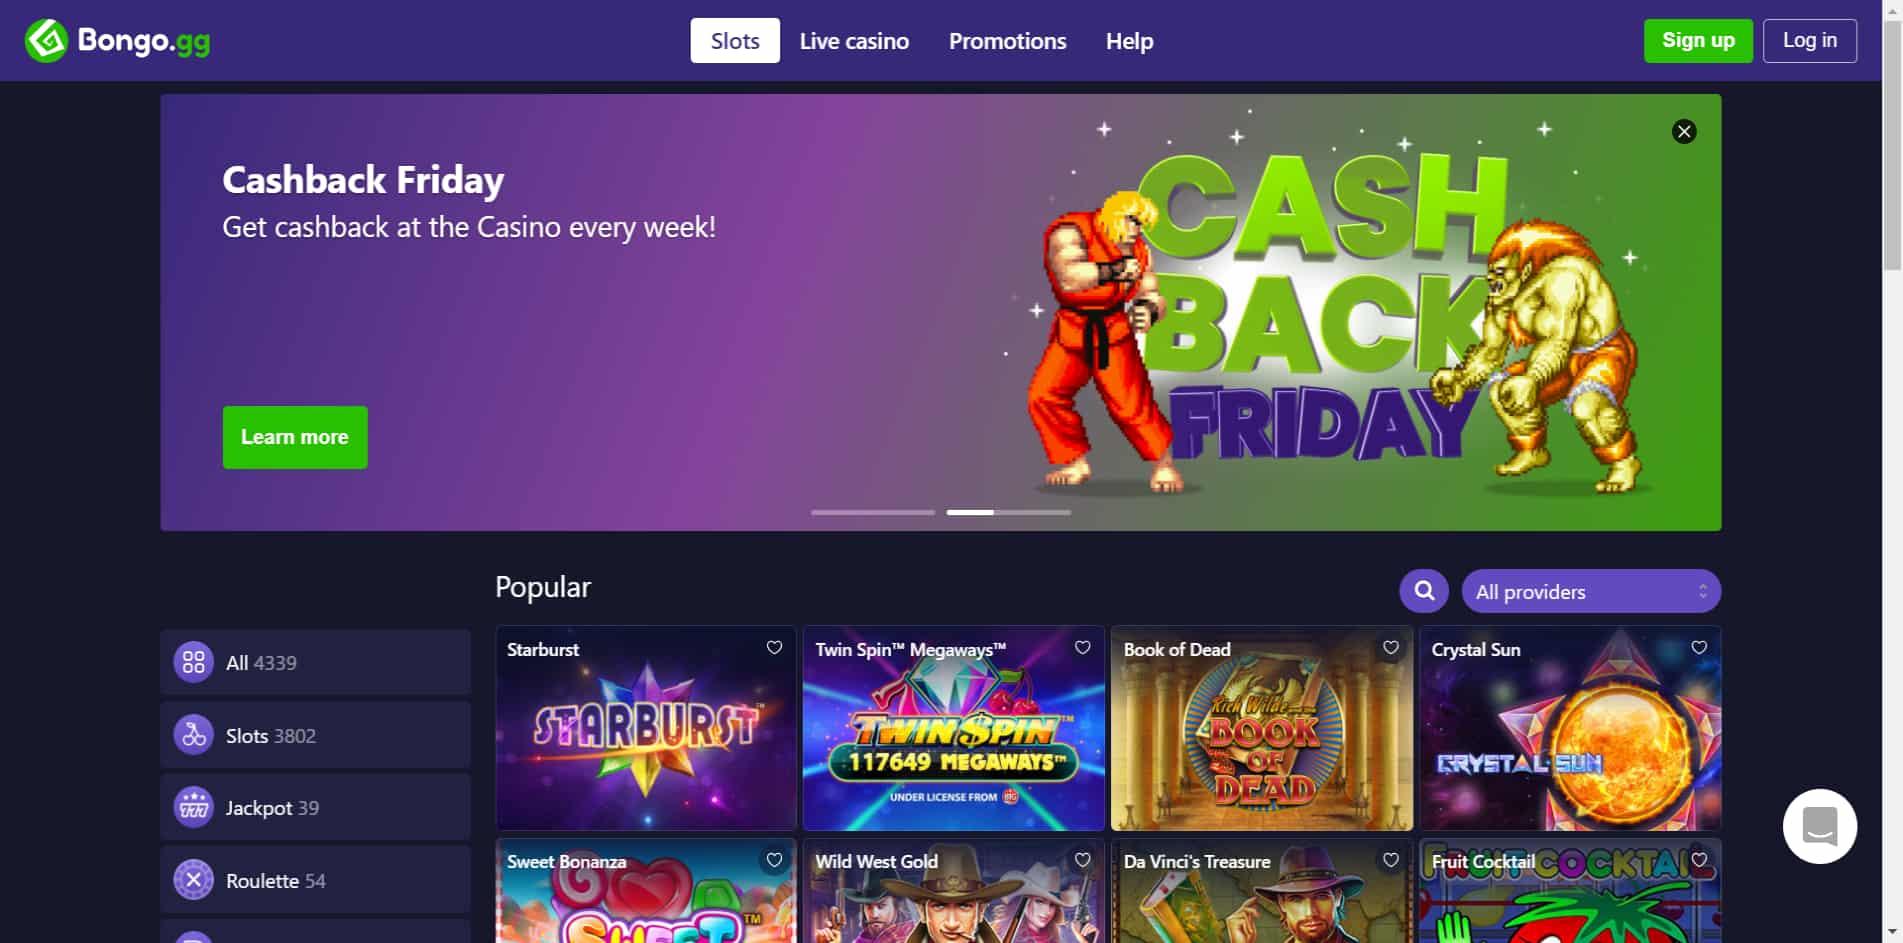 Bongo casino homepage